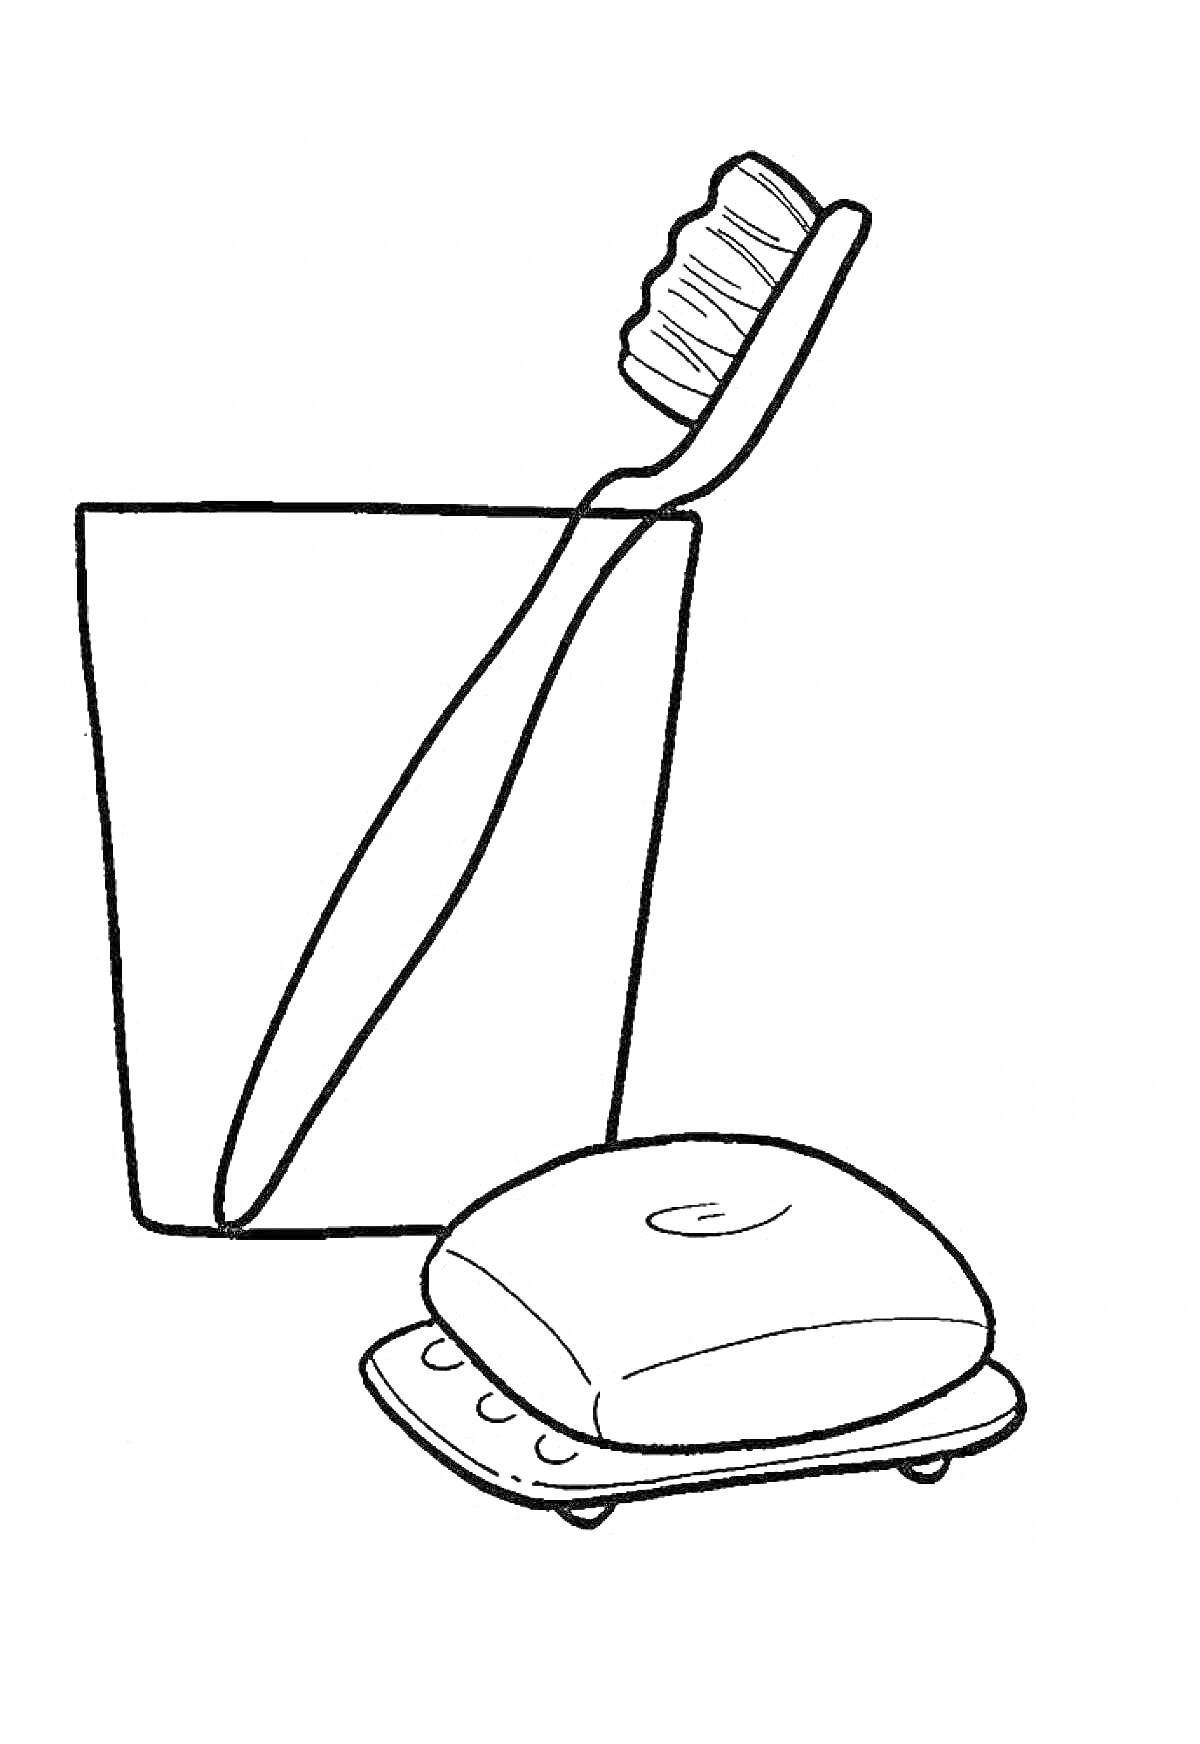 Раскраска Стакан с зубной щеткой и кусок мыла на мыльнице